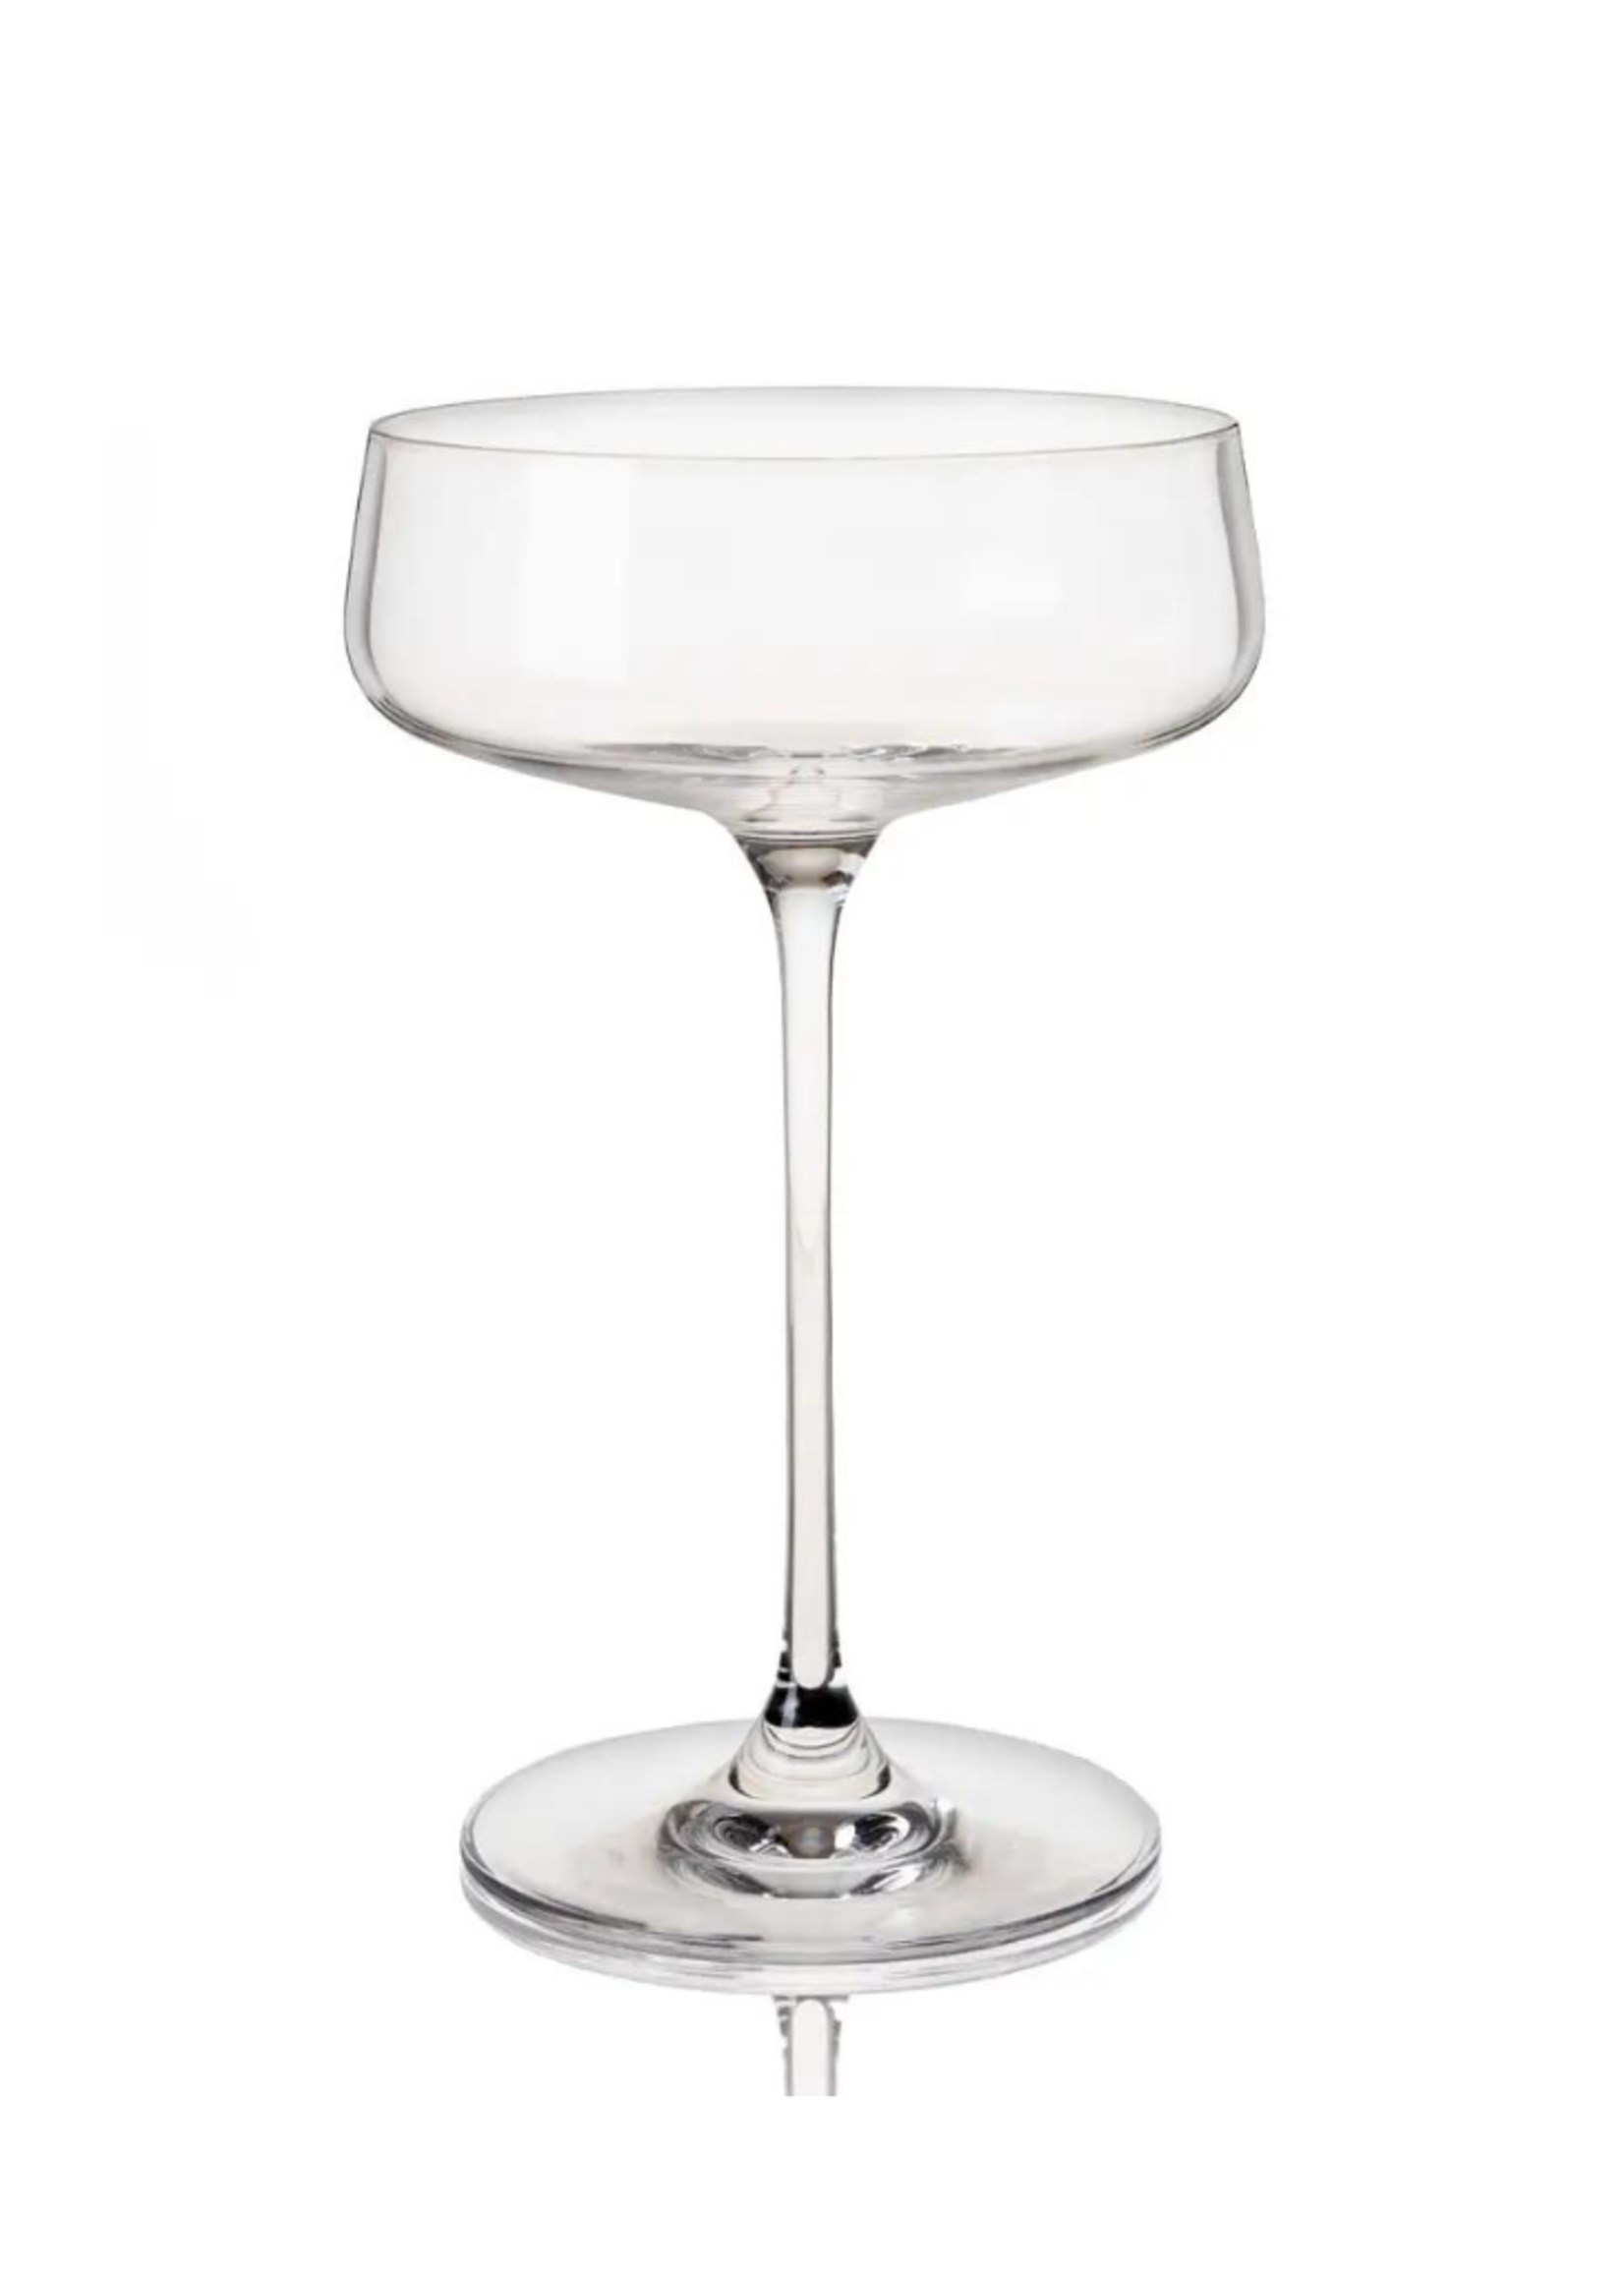 Viski Viski - Reserve Julien Crystal Coupe Glasses, set of 4